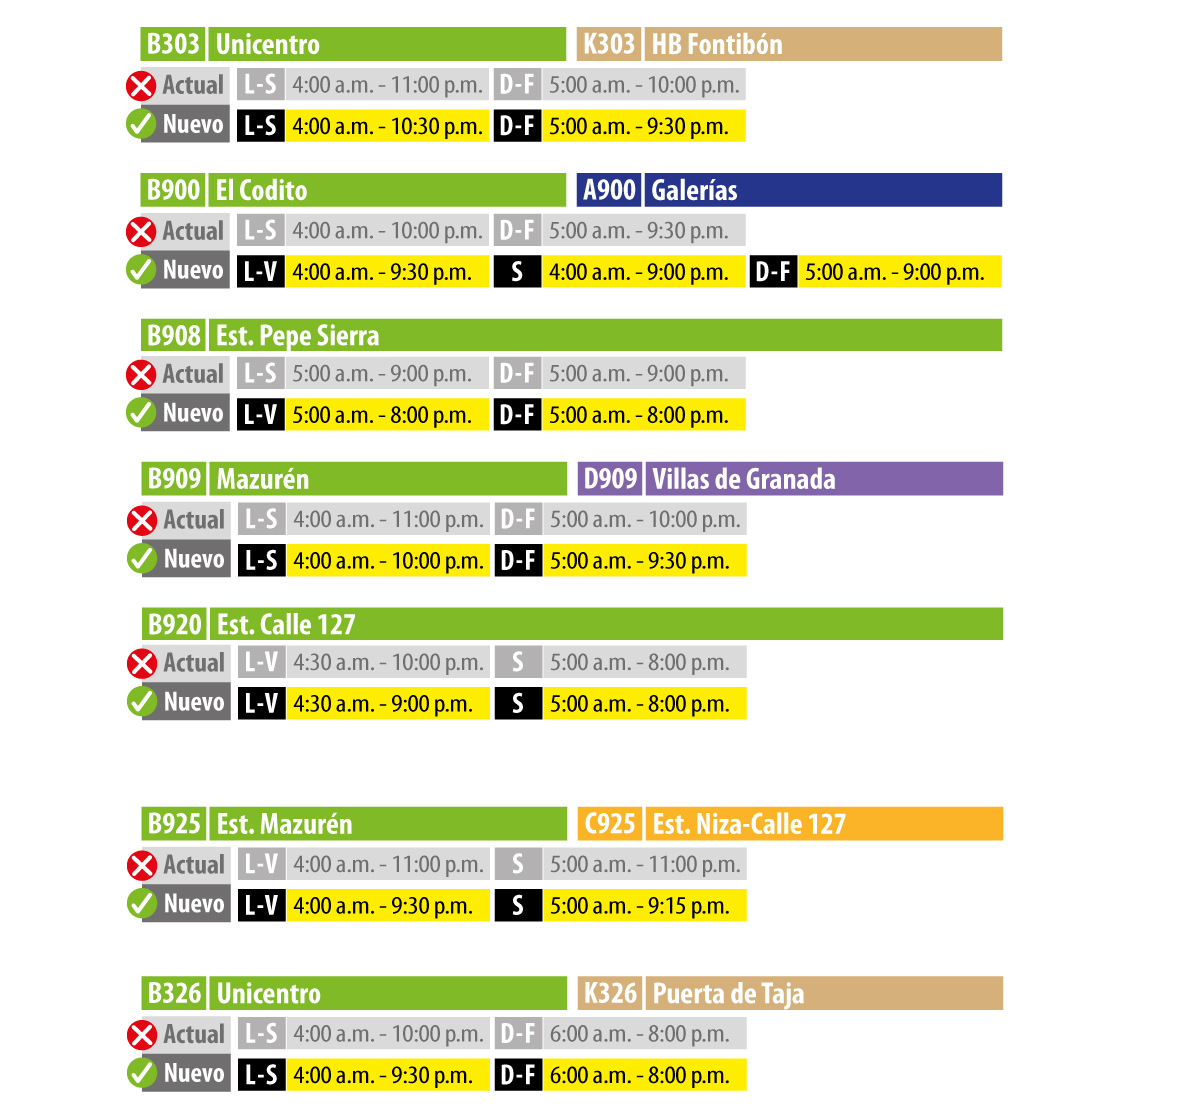 TransMilenio: diversas rutas zonales modifican su horario de operación